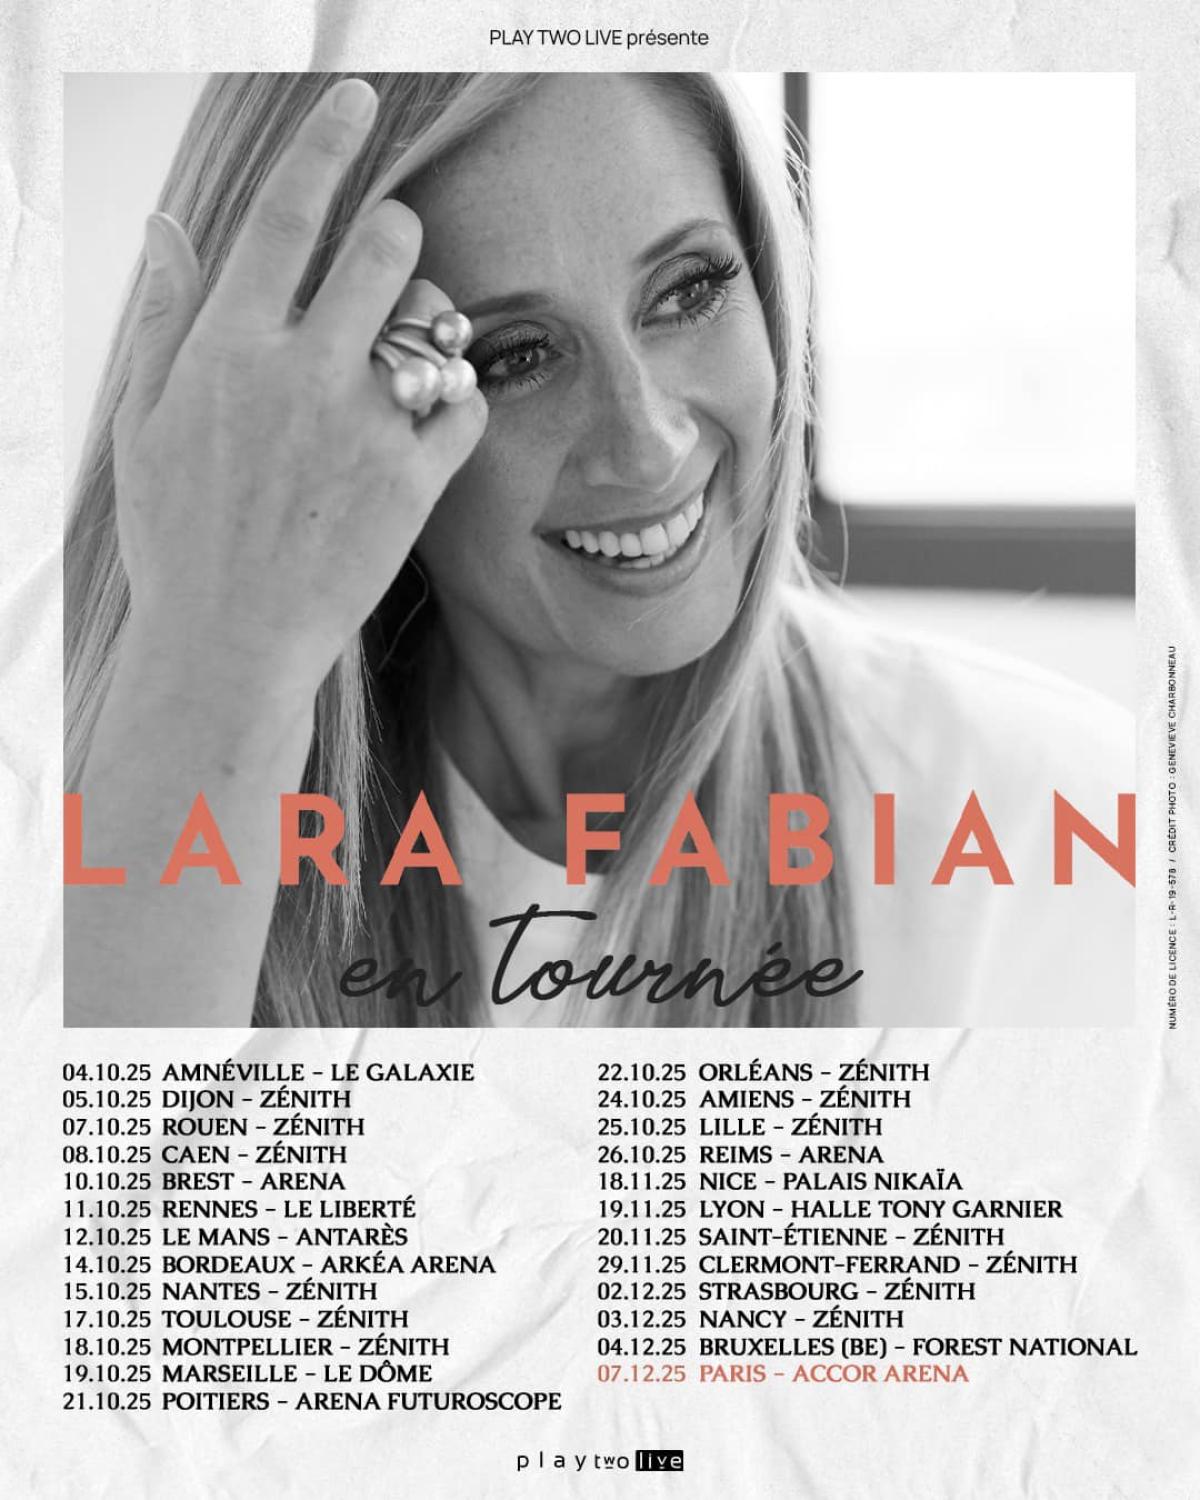 Lara Fabian at Zenith Saint Etienne Tickets